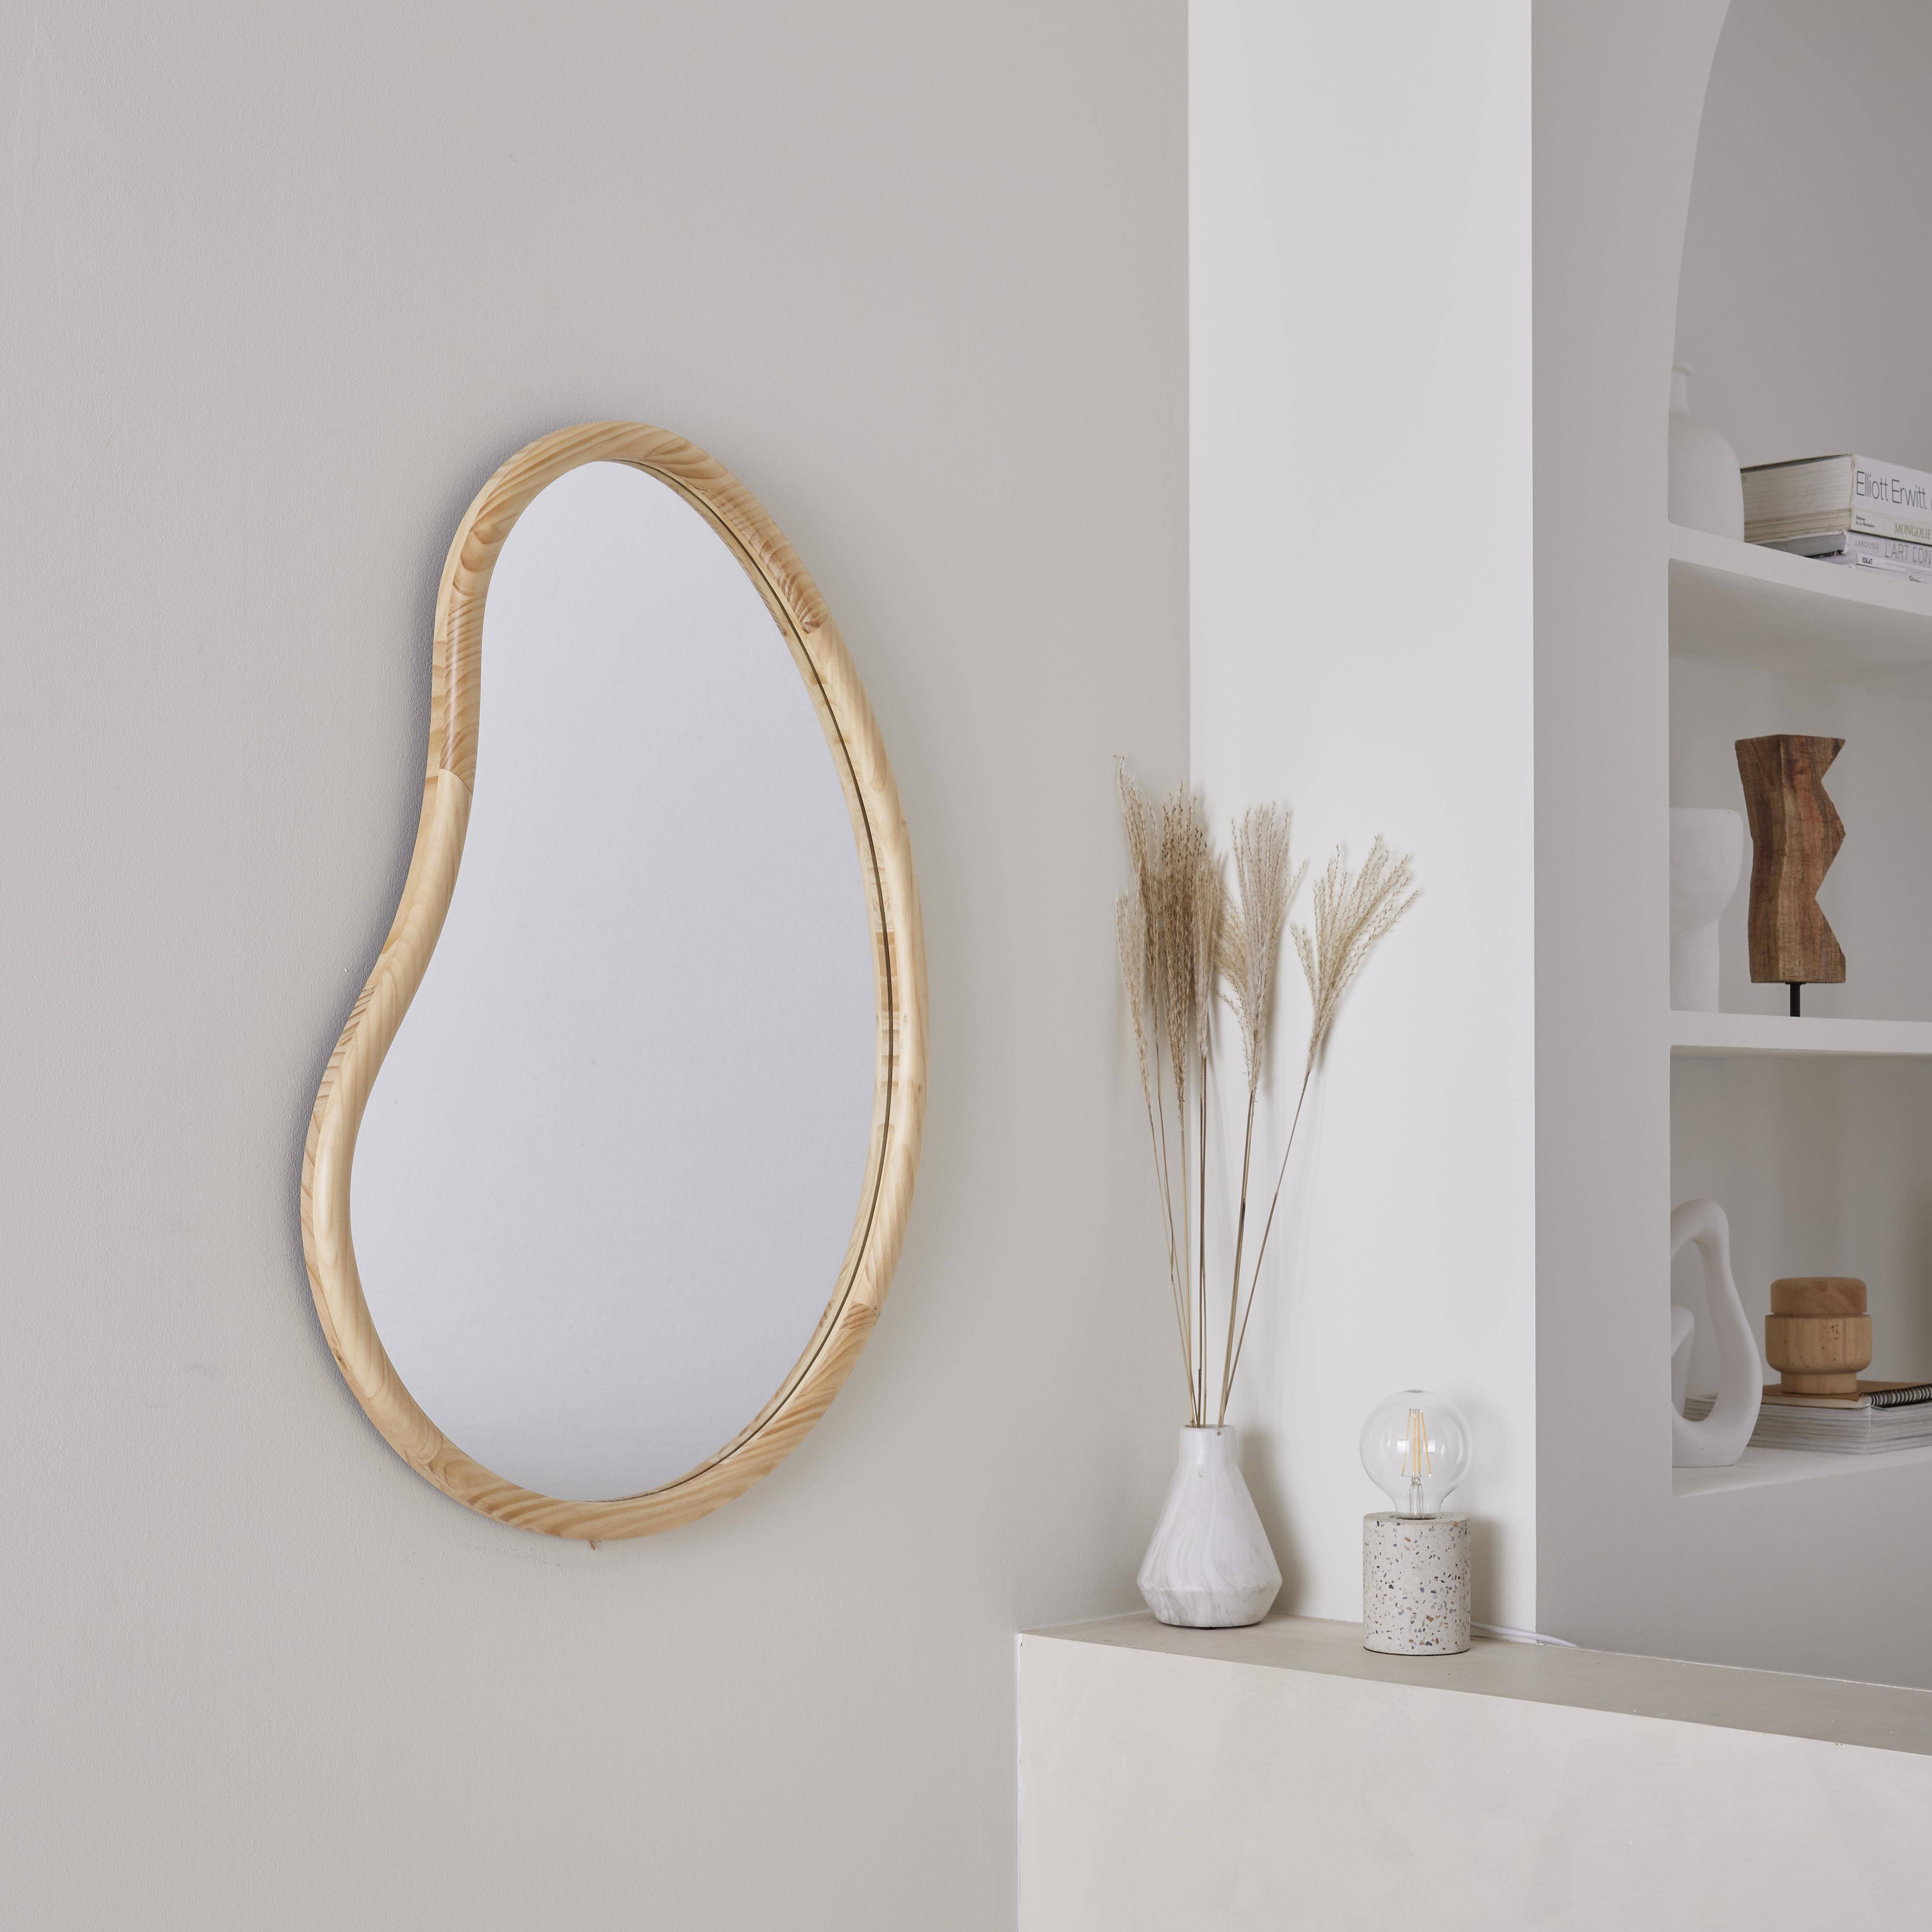 Miroir organique en bois de sapin 85cm épaisseur 3cm coloris naturel idéal entrée, chambre ou salle de bain,sweeek,Photo1